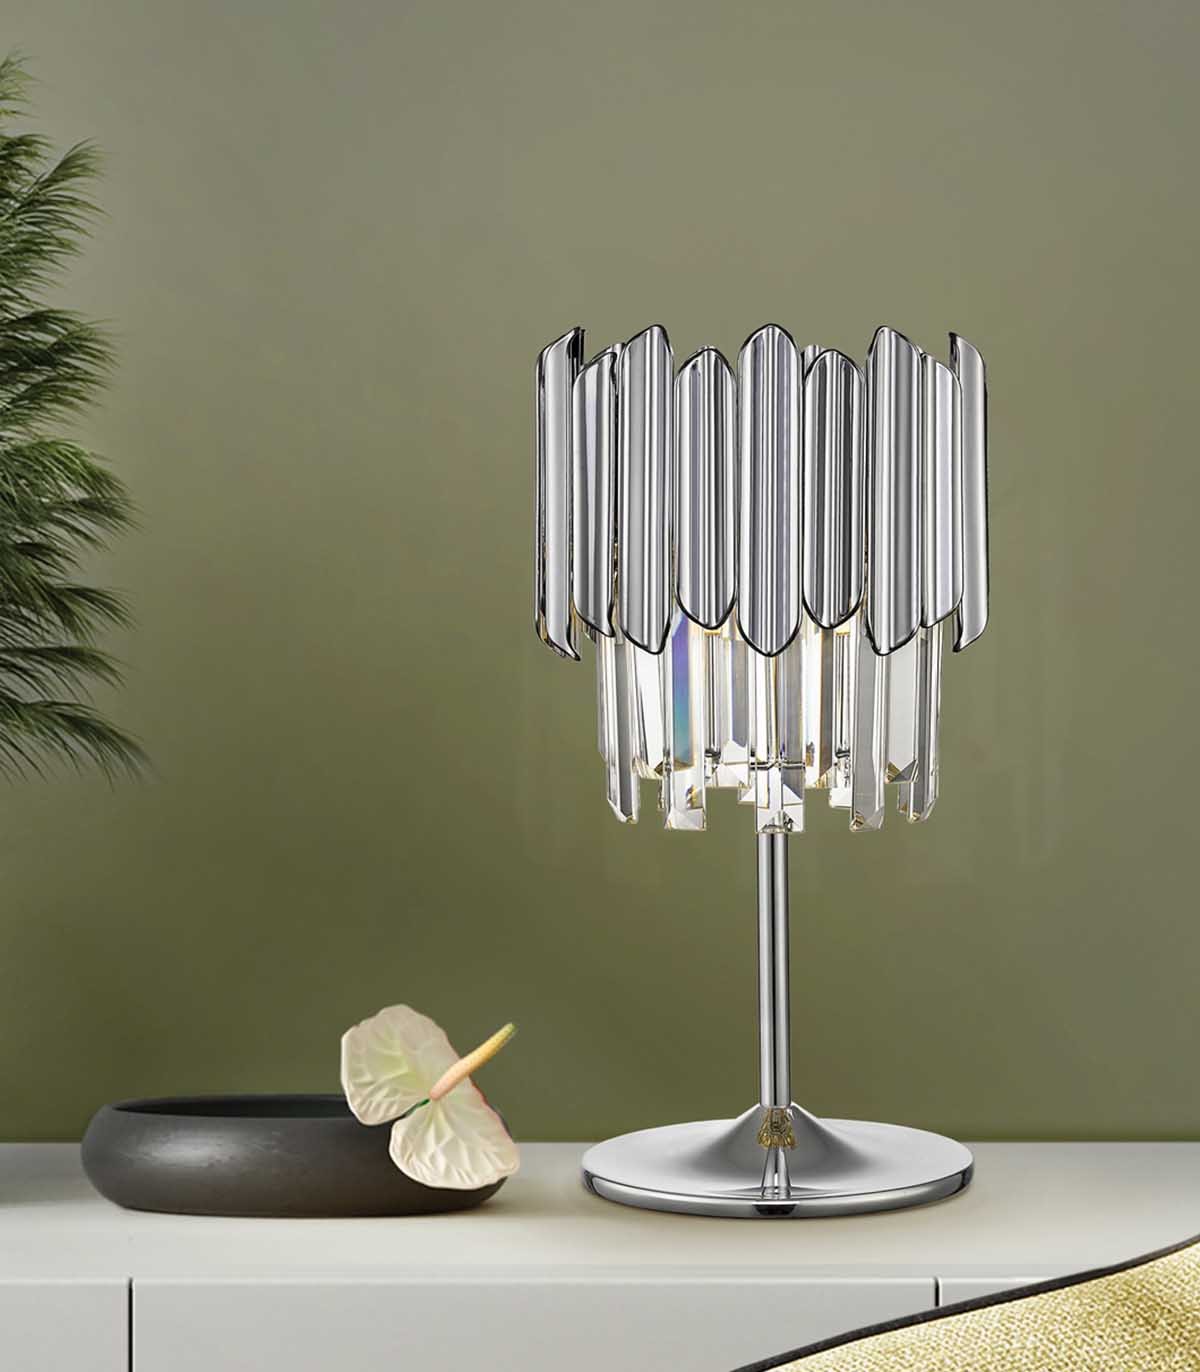 Petit Lampadaire Design Lampe de Chevet Abat-jou…